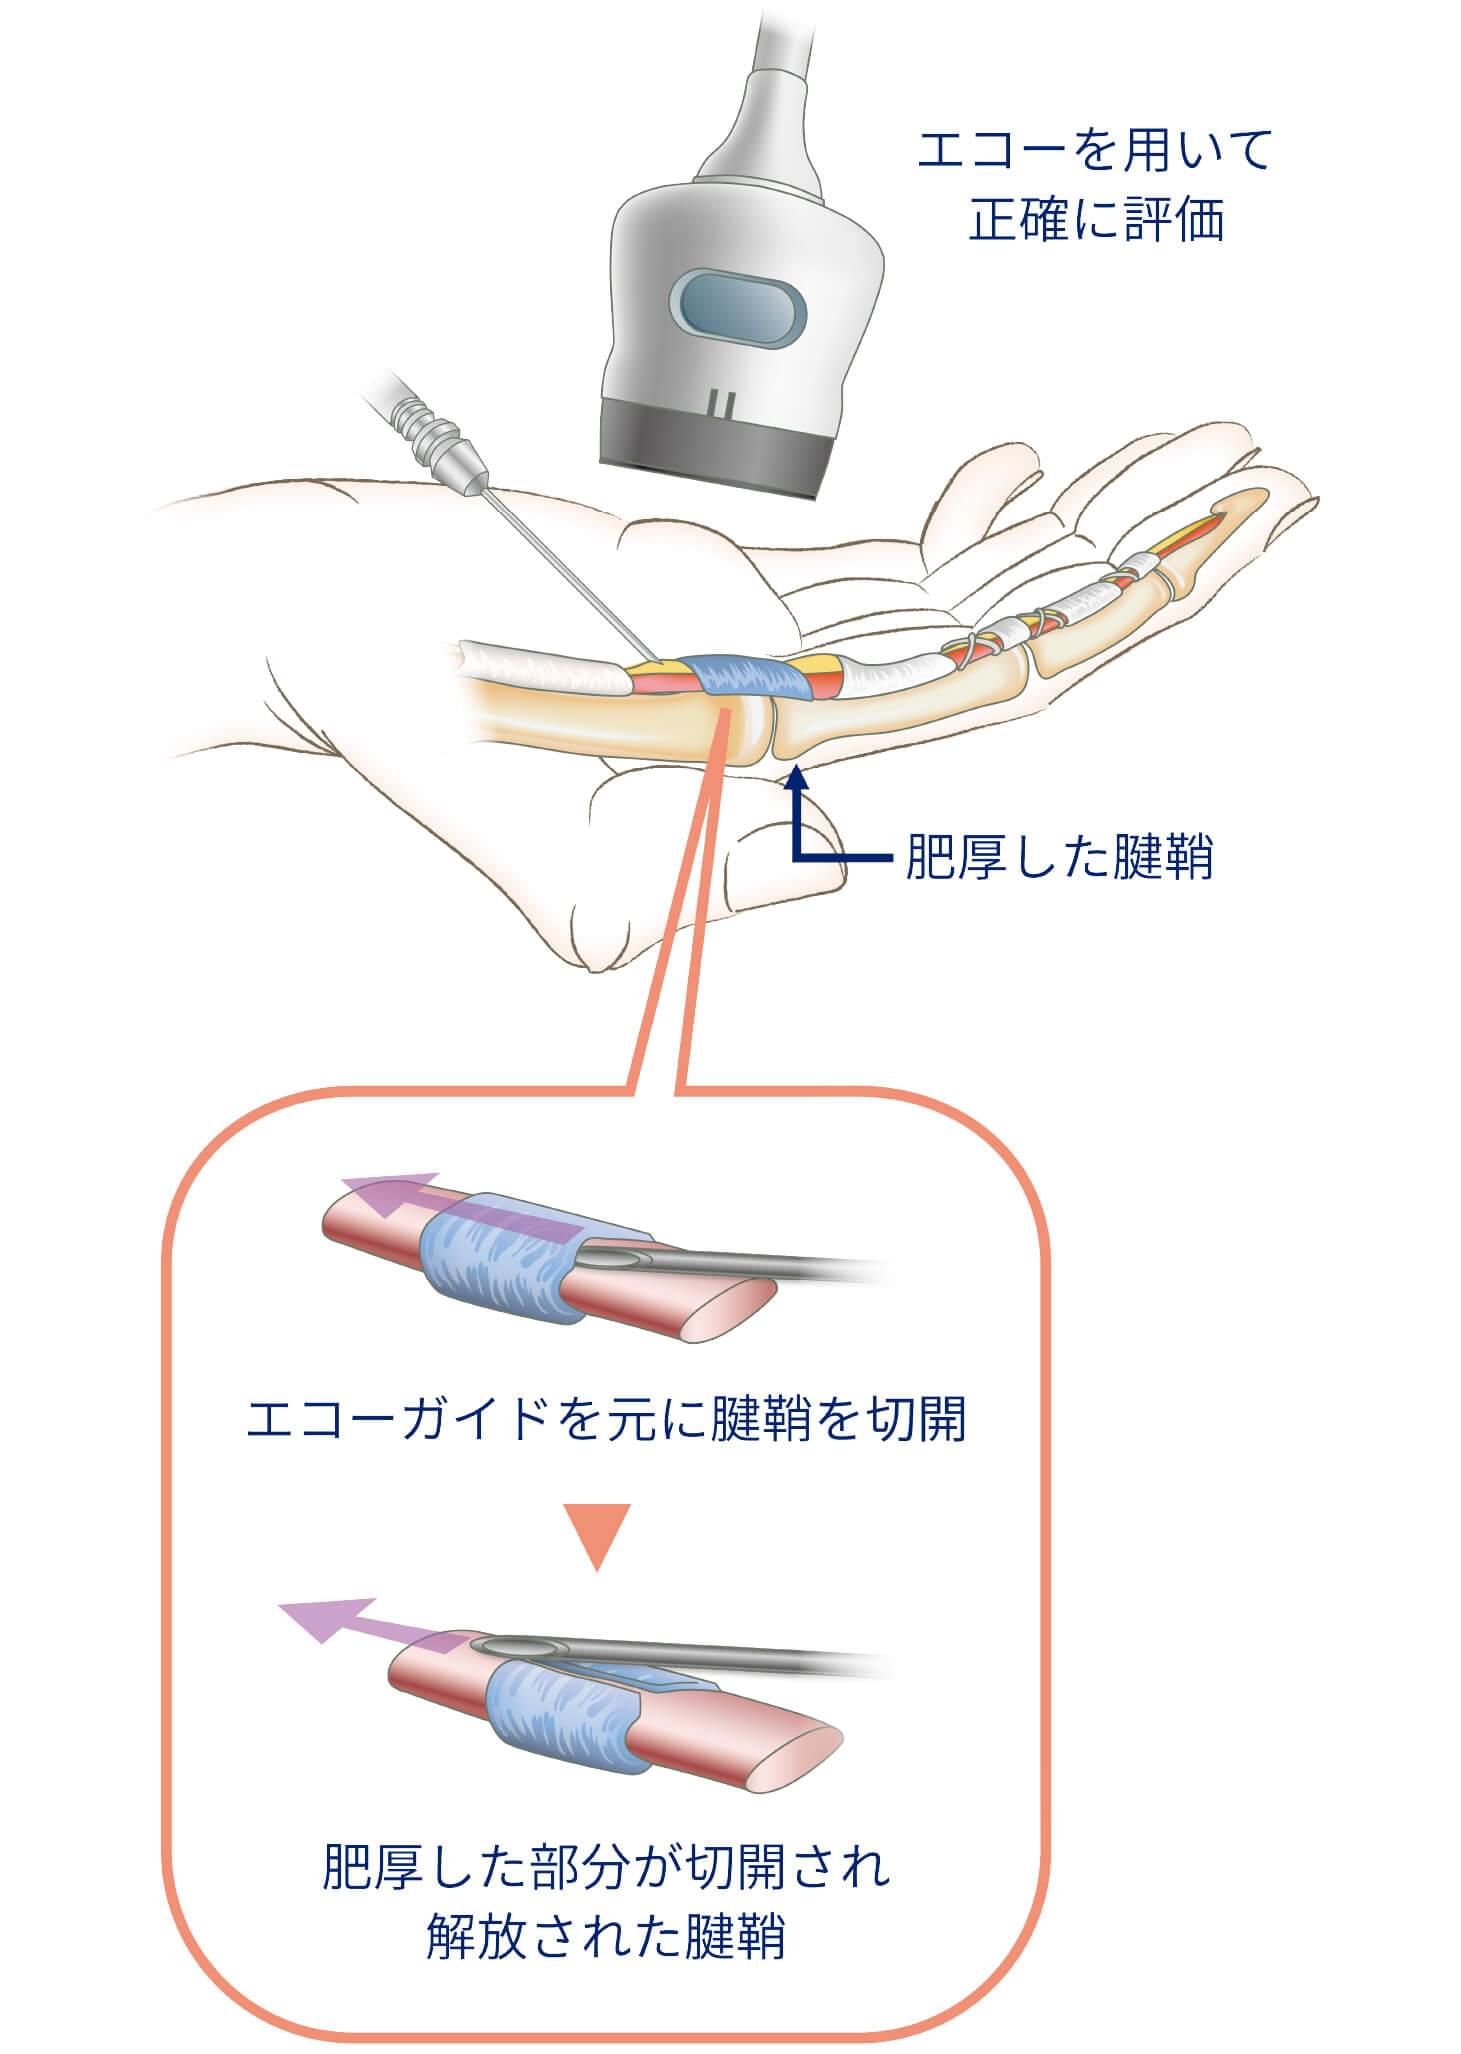 エコーガイド下経皮的腱腱鞘切開術イメージ